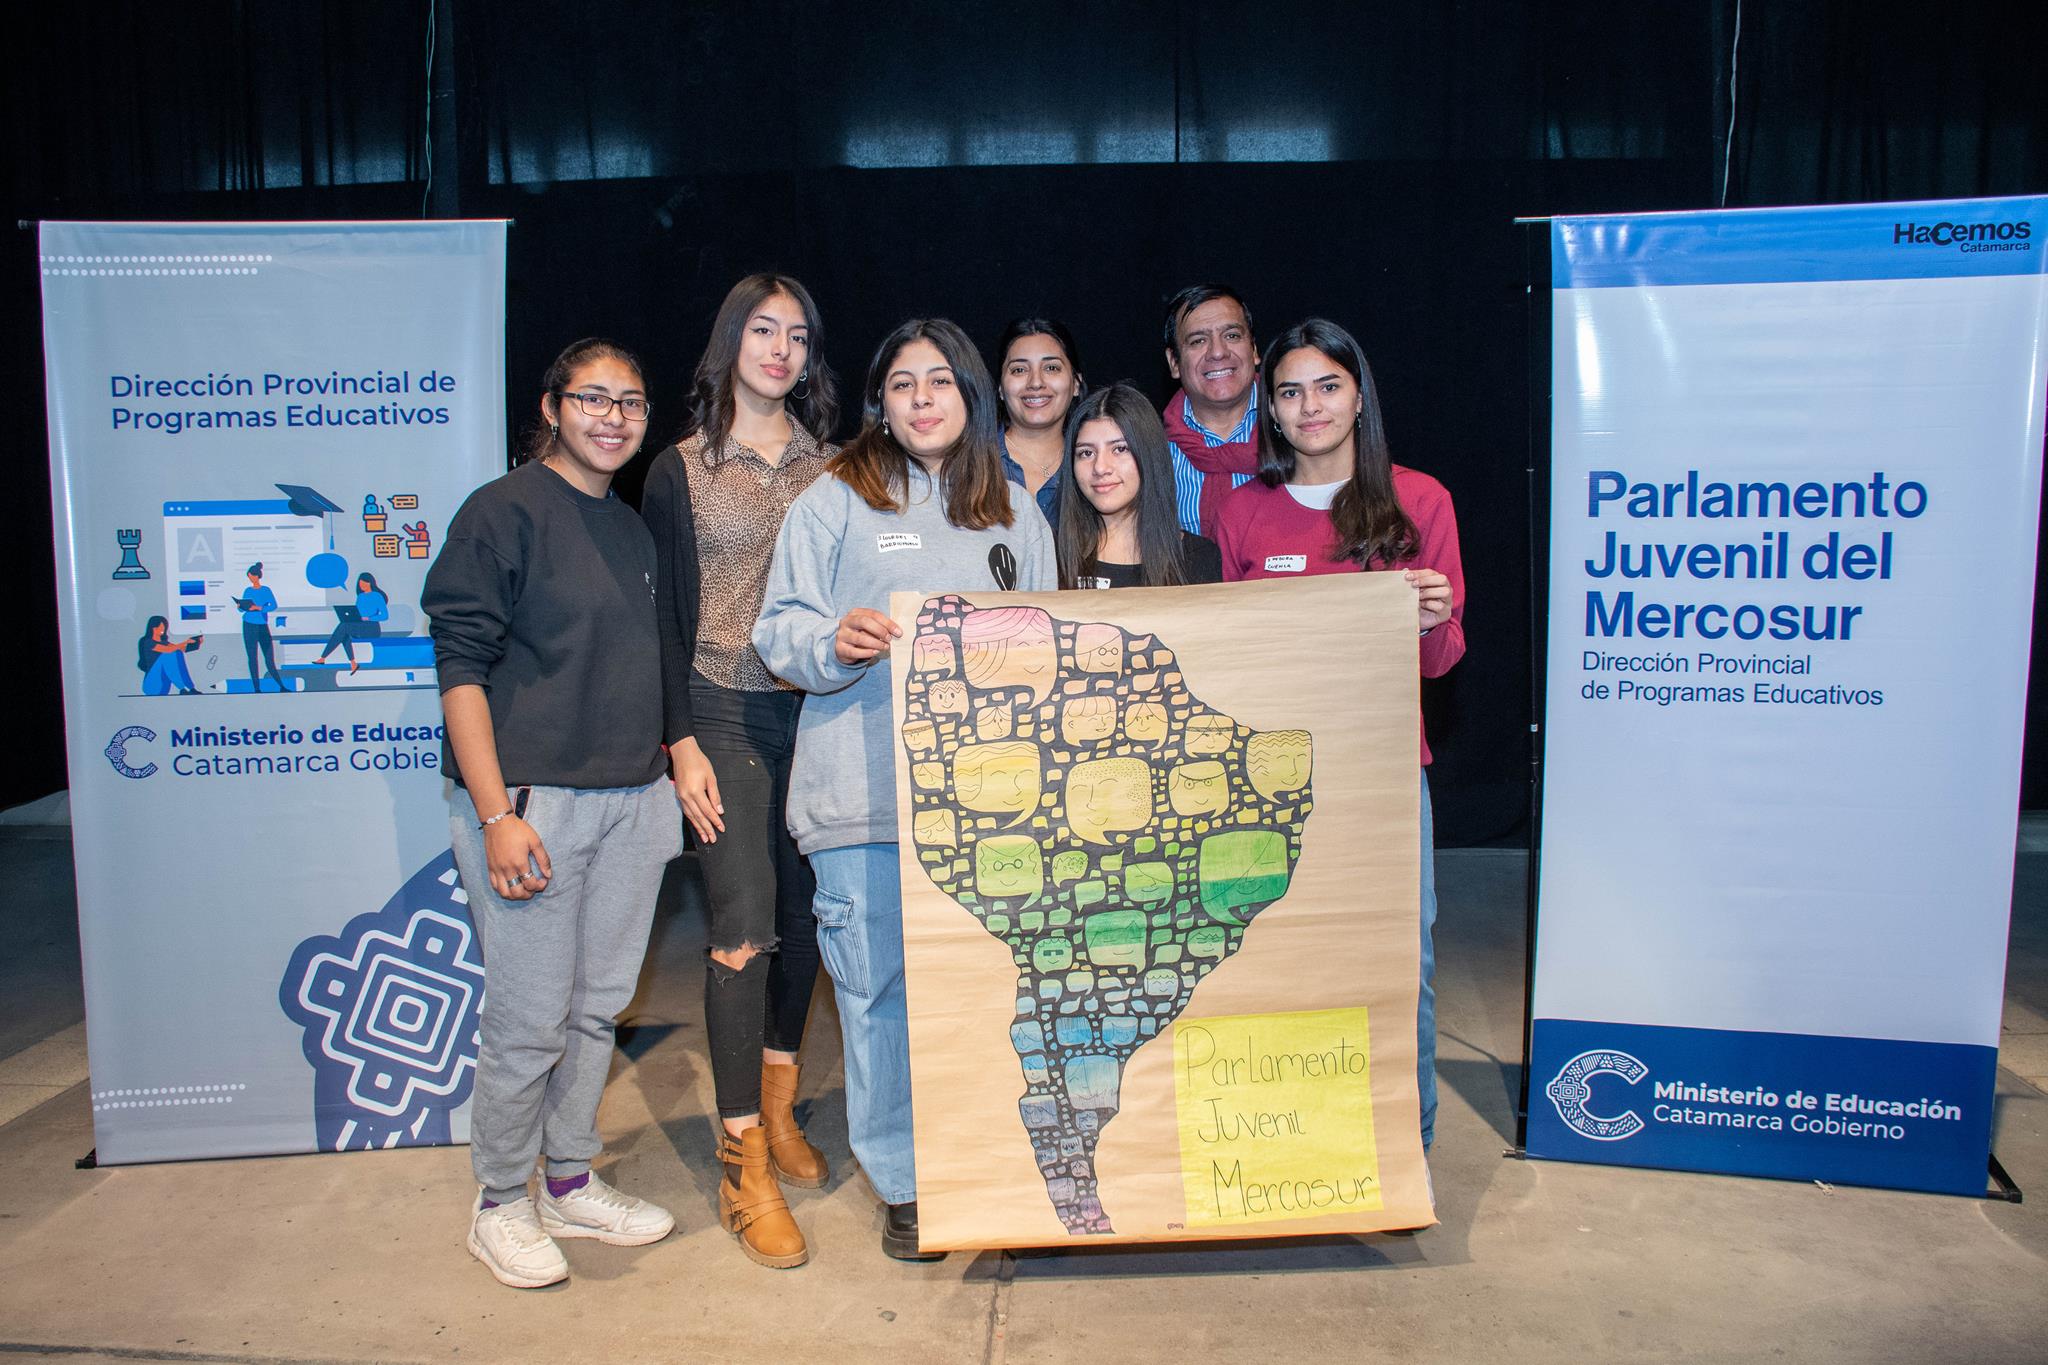 Educación realizó el Encuentro Provincial de Parlamento Juvenil del Mercosur con alumnos y docentes de varios departamentos29